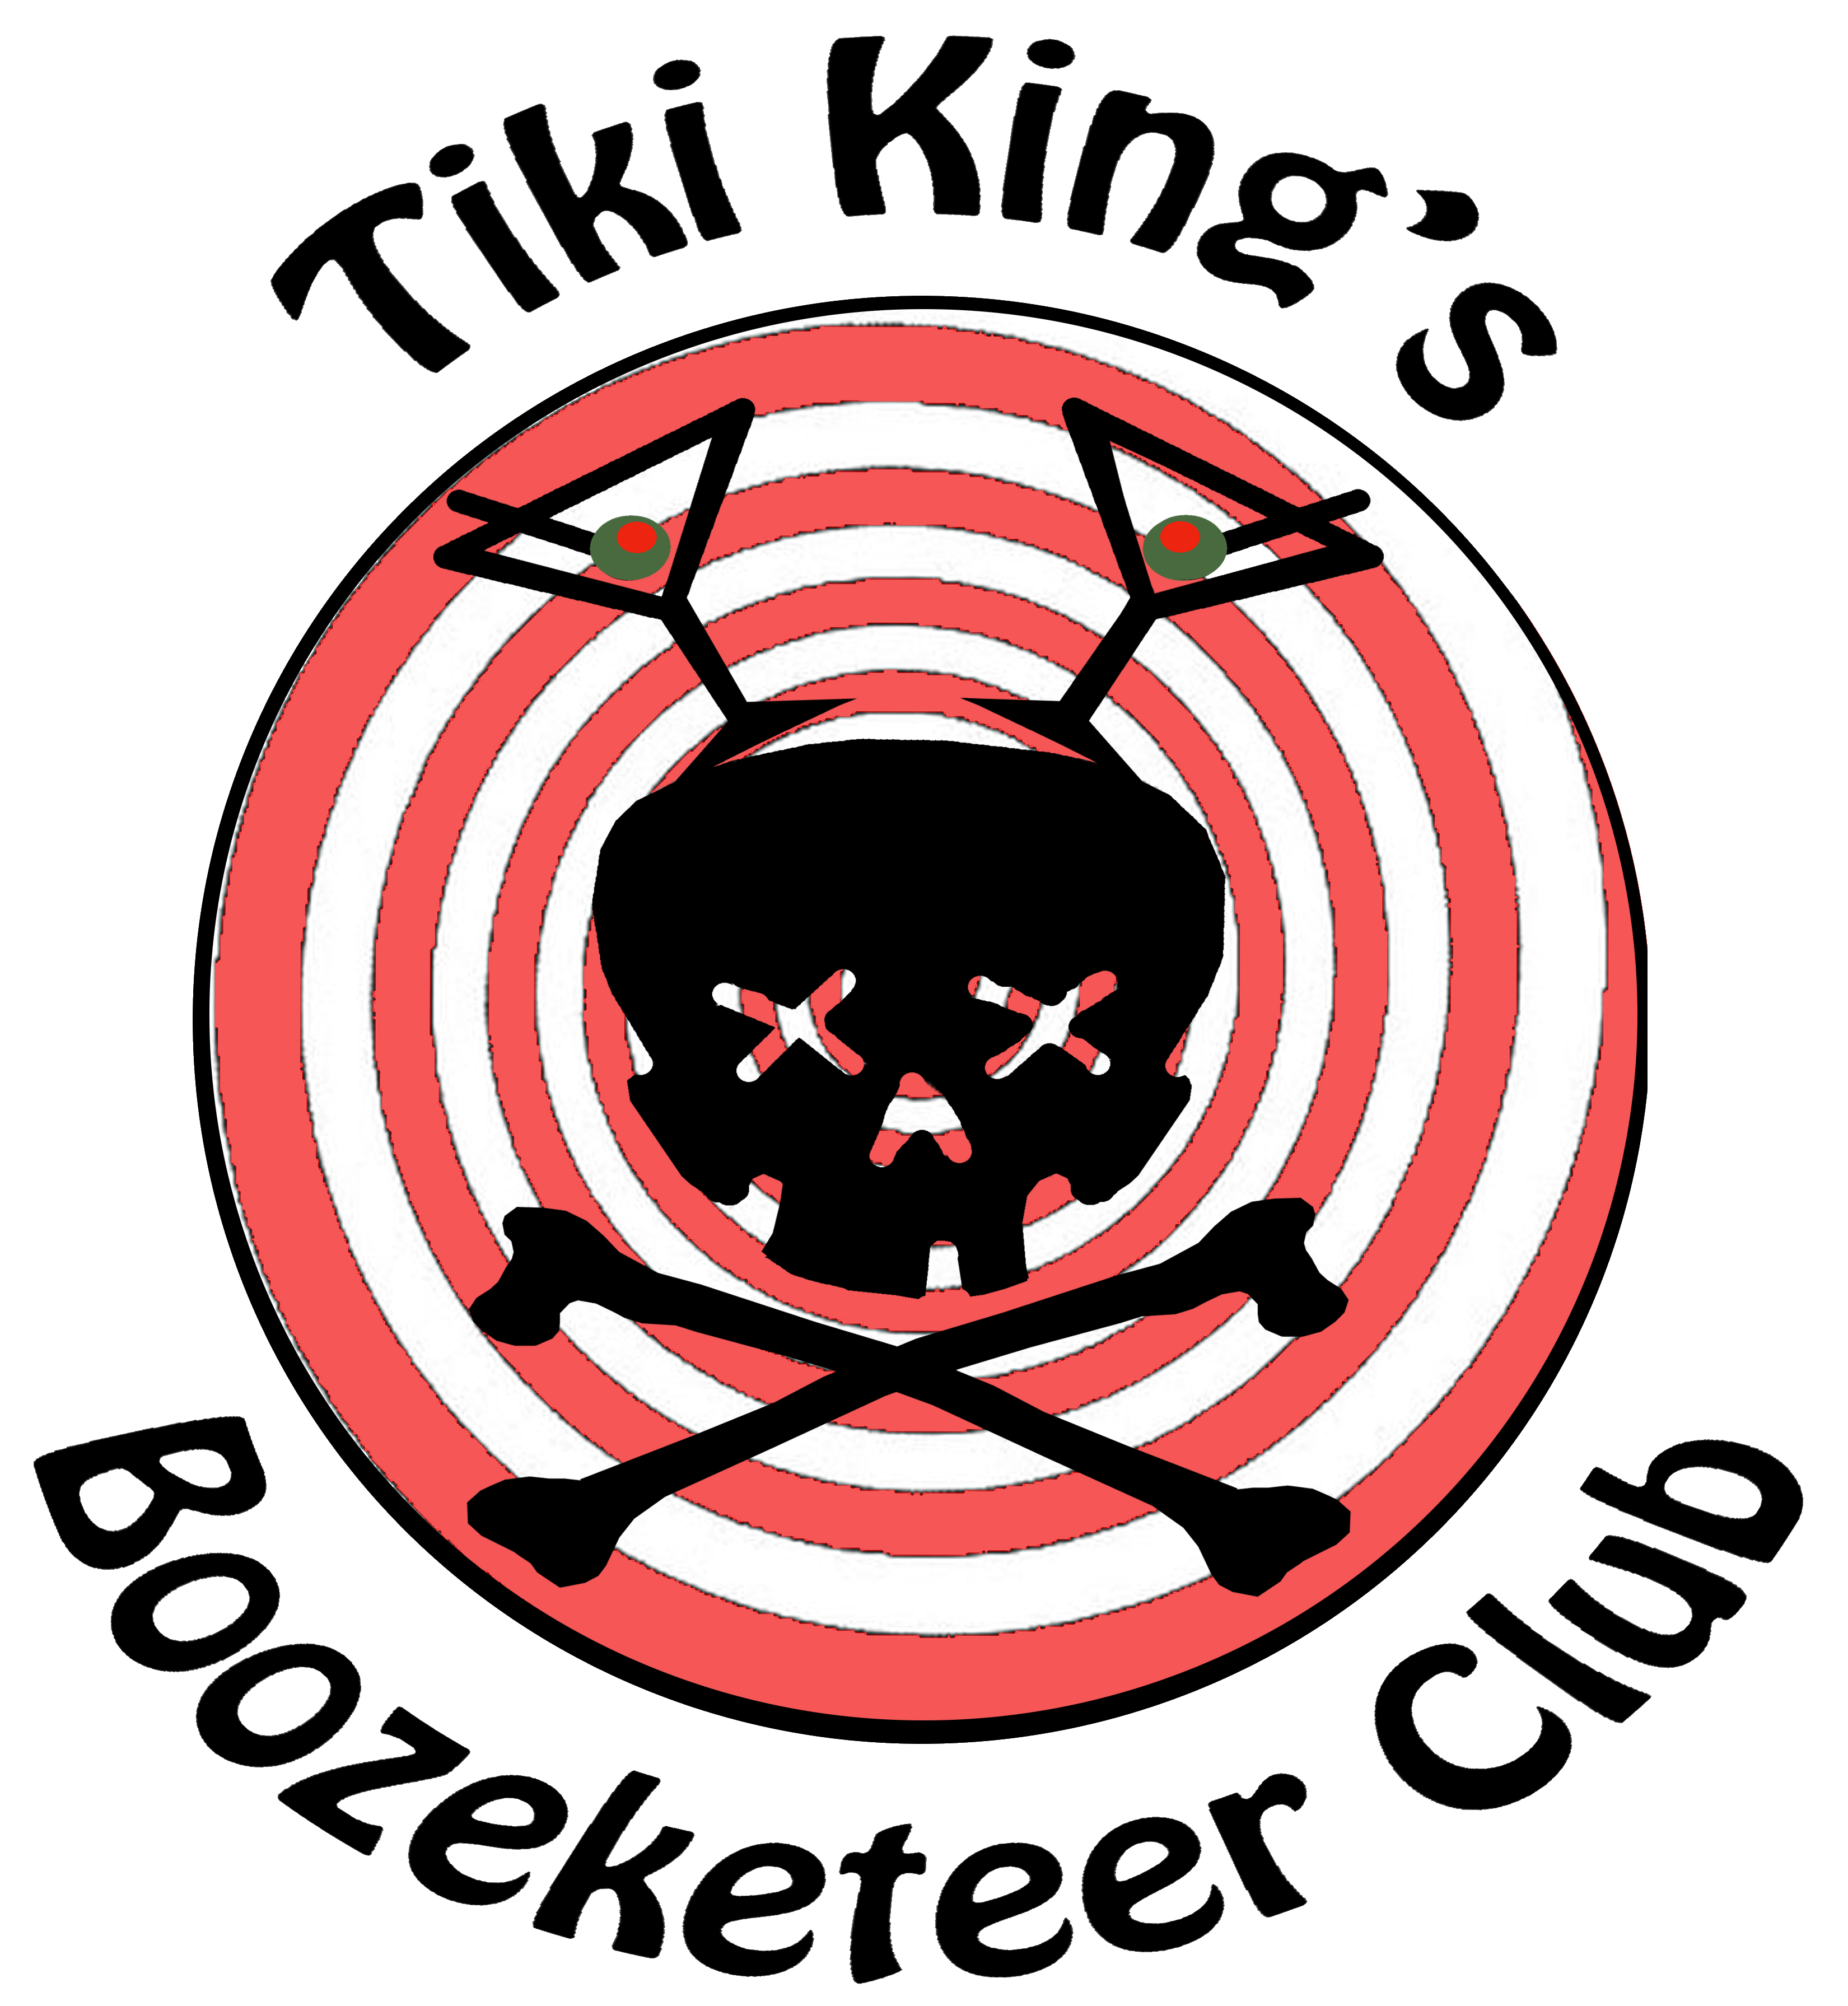 Tiki King's facebook